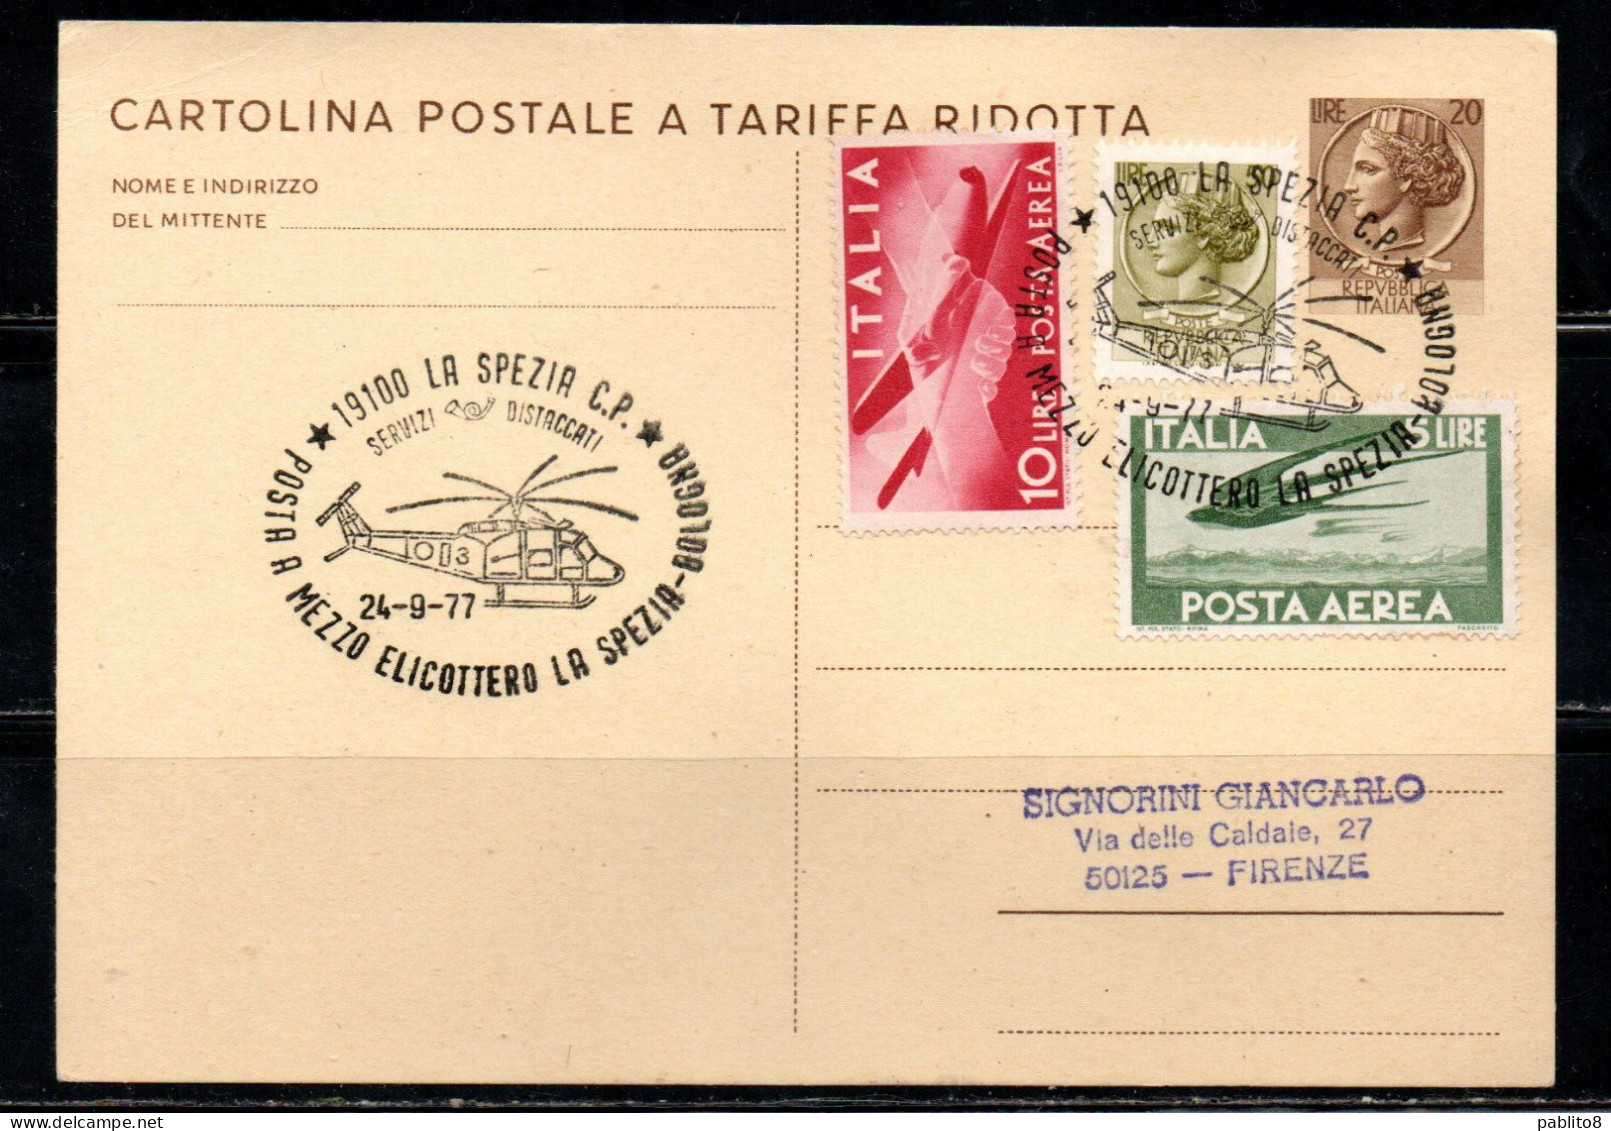 ITALIA REPUBBLICA ITALY REPUBLIC CARTOLINA POSTALE INTERO 24-09-1977 POSTA  A MEZZO ELICOTTERO BOLOGNA VIAGGIATA - Interi Postali